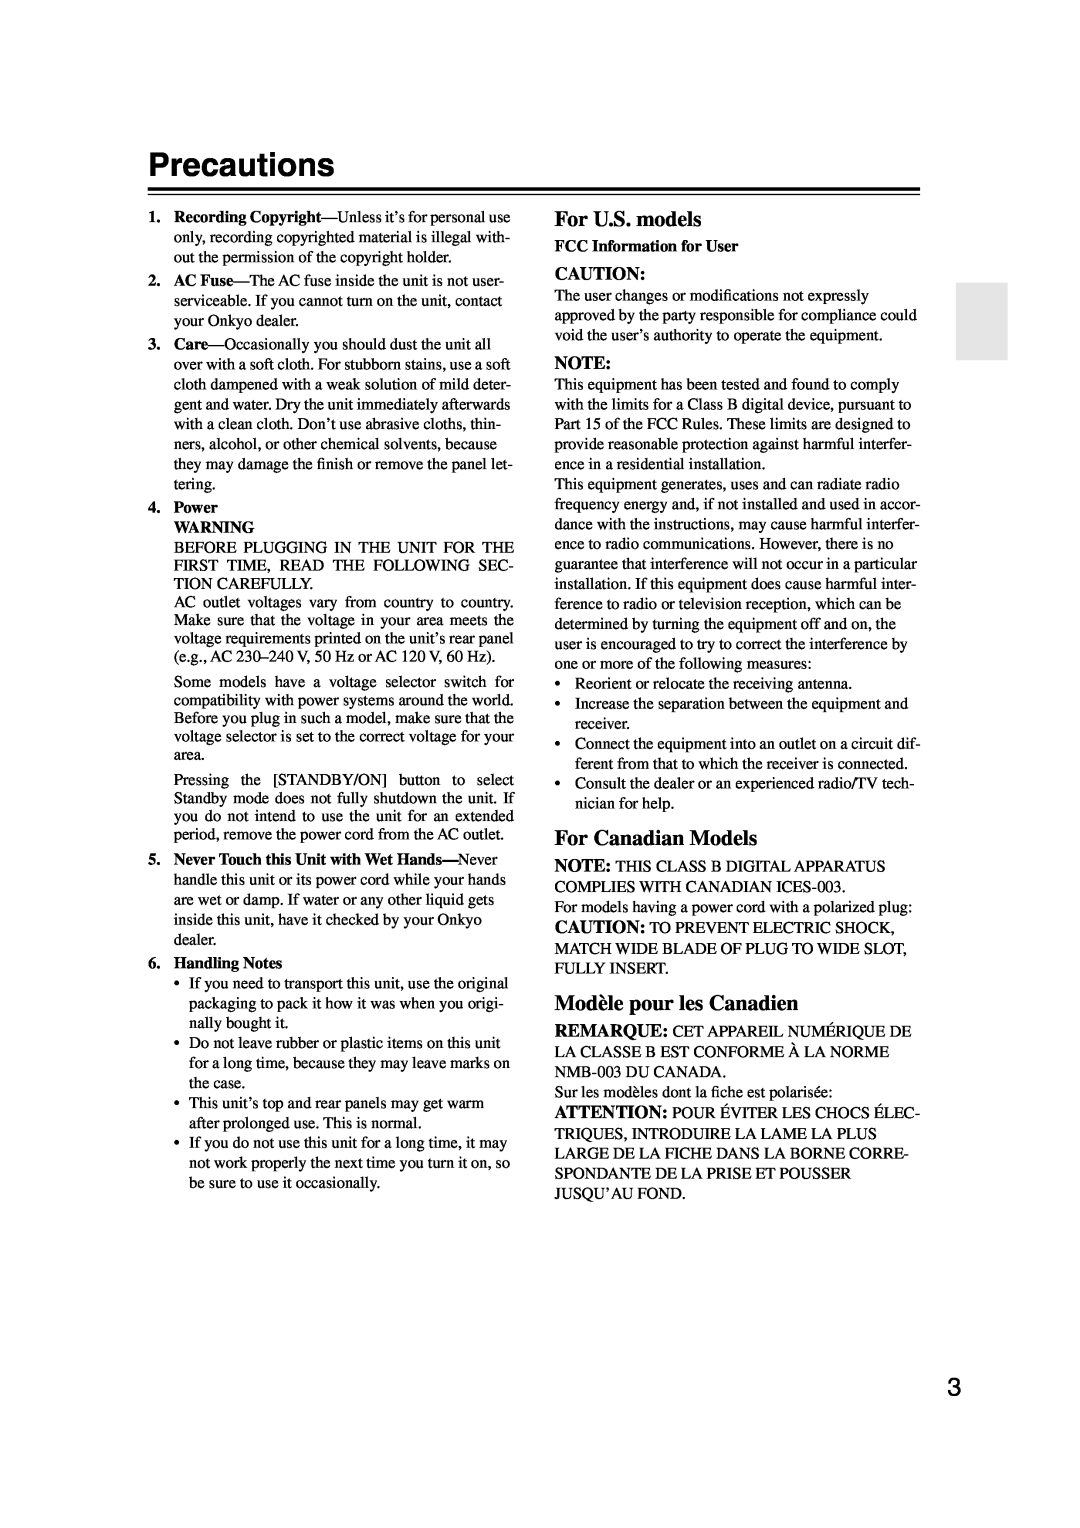 Onkyo TX-SR304 instruction manual Precautions, For U.S. models, For Canadian Models, Modèle pour les Canadien 